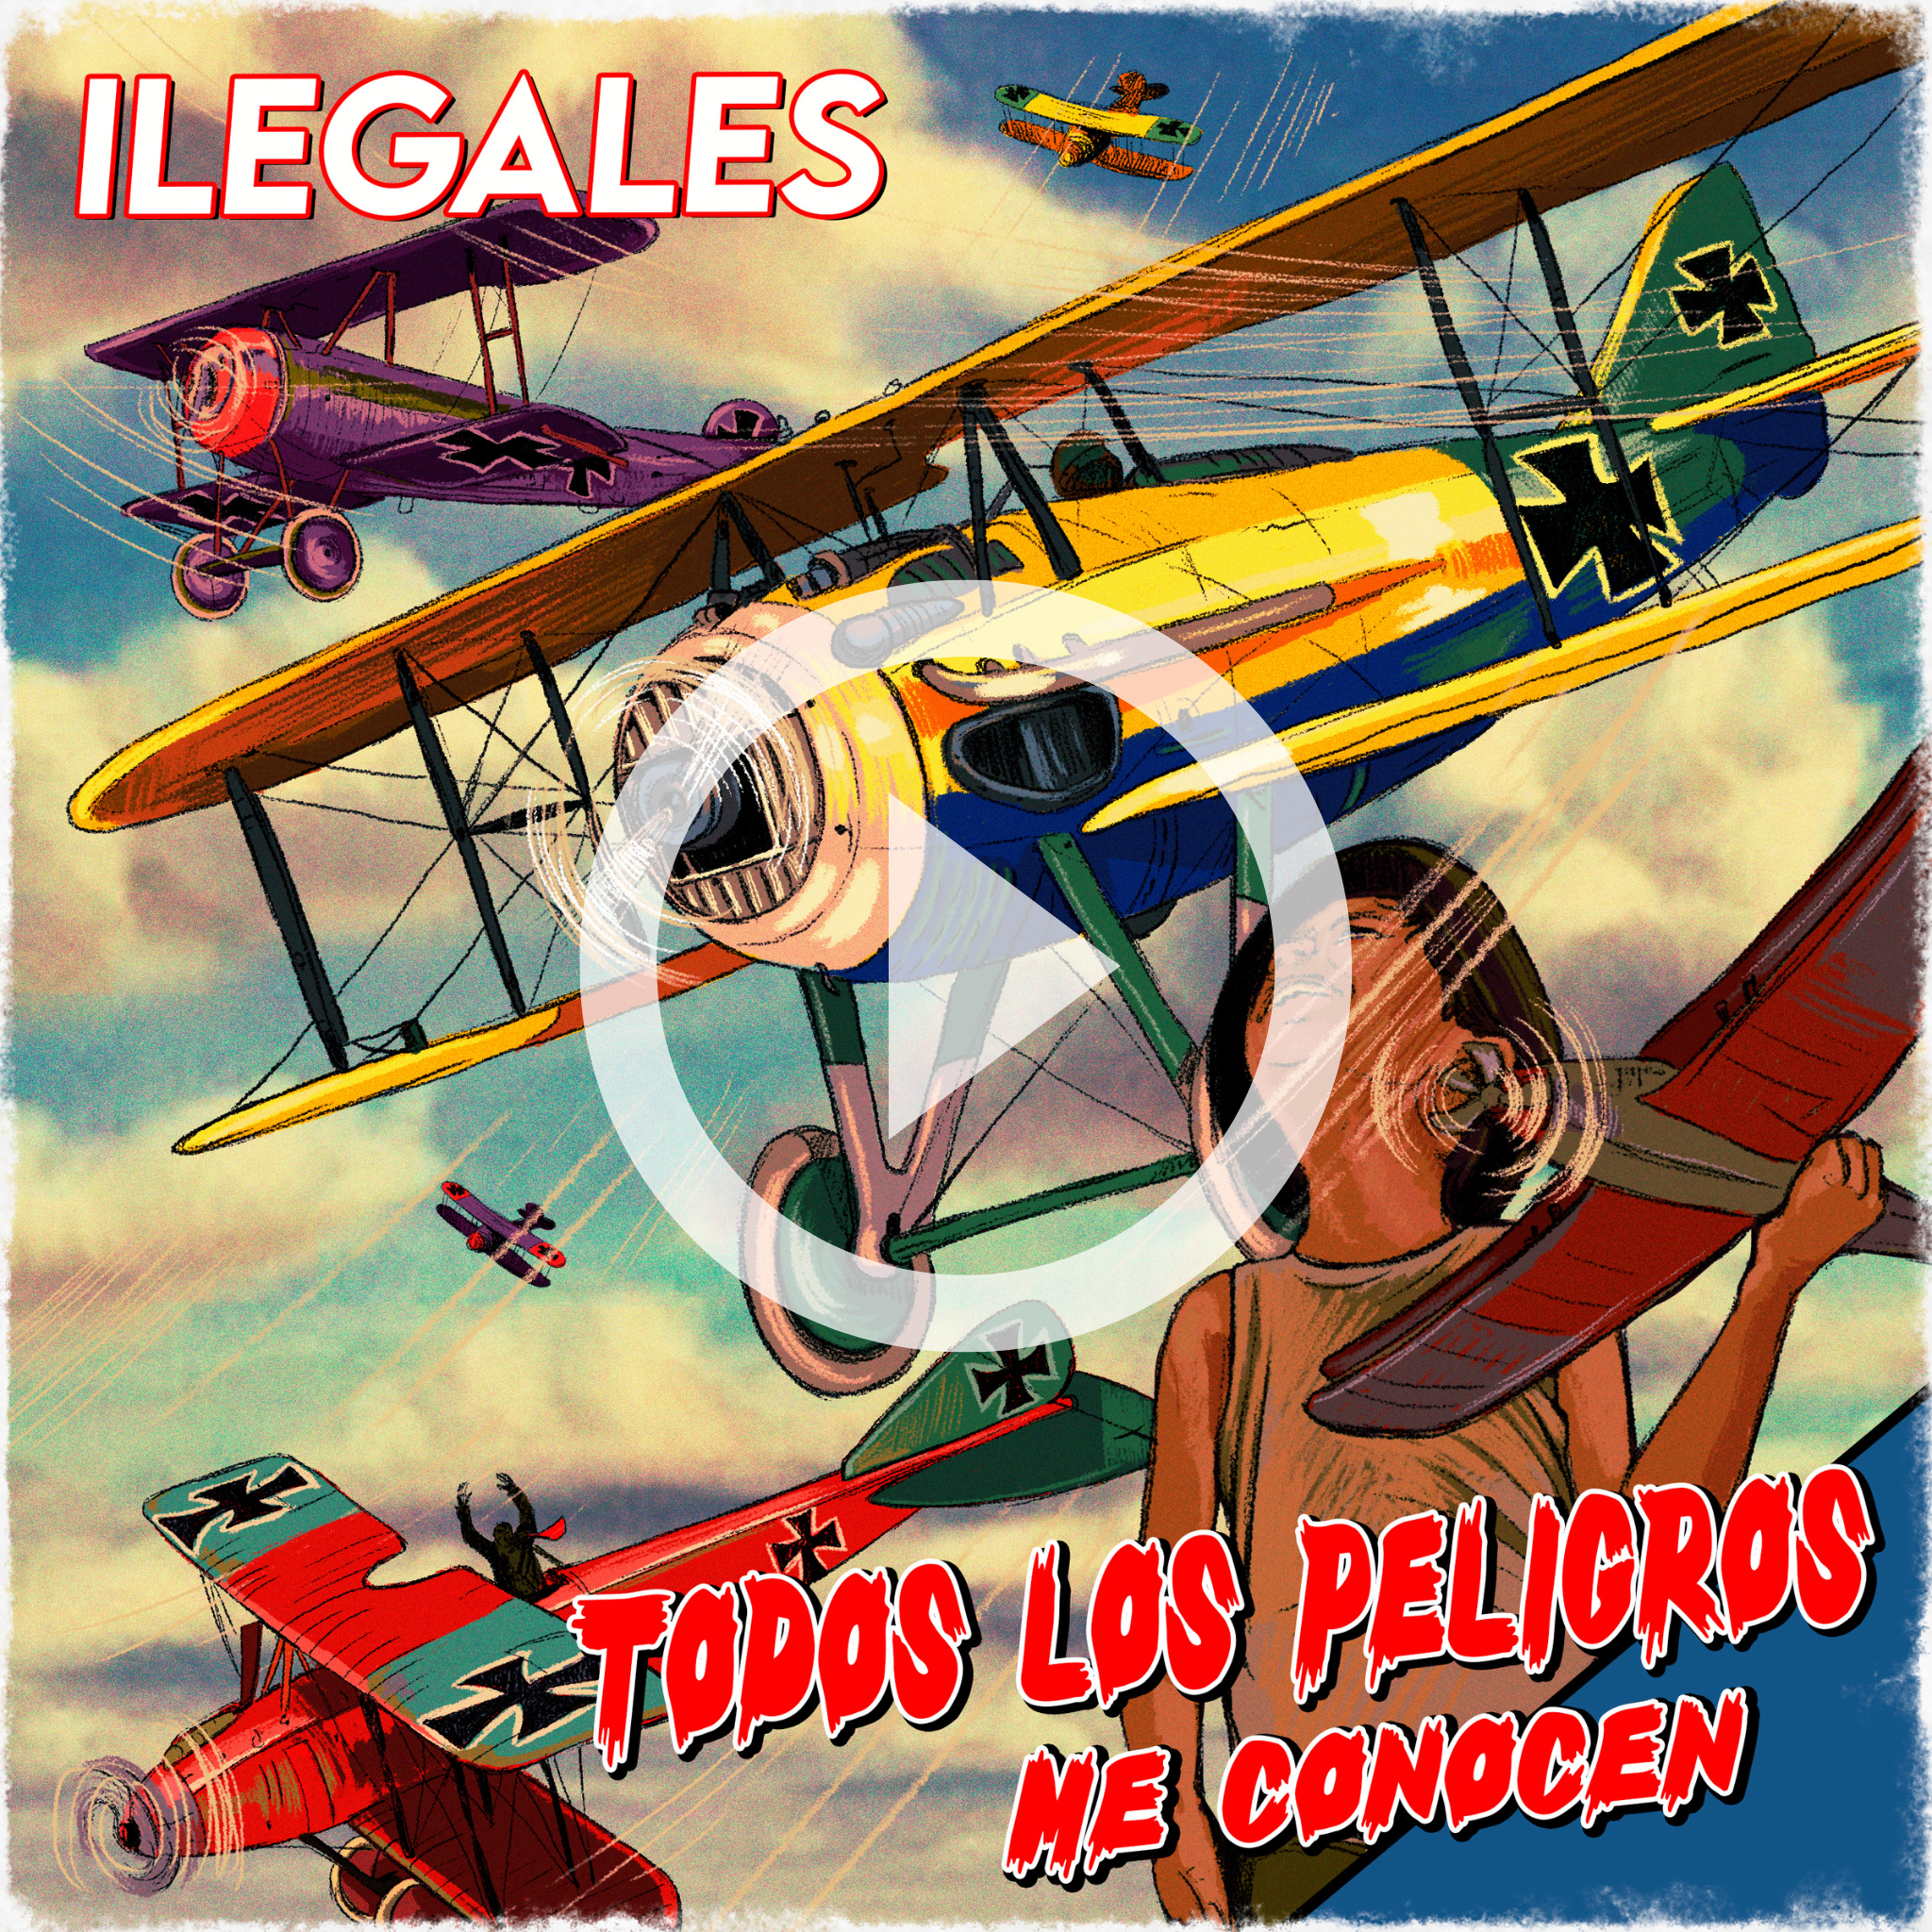 ILEGALES lanza el single “Todos los peligros me conocen”